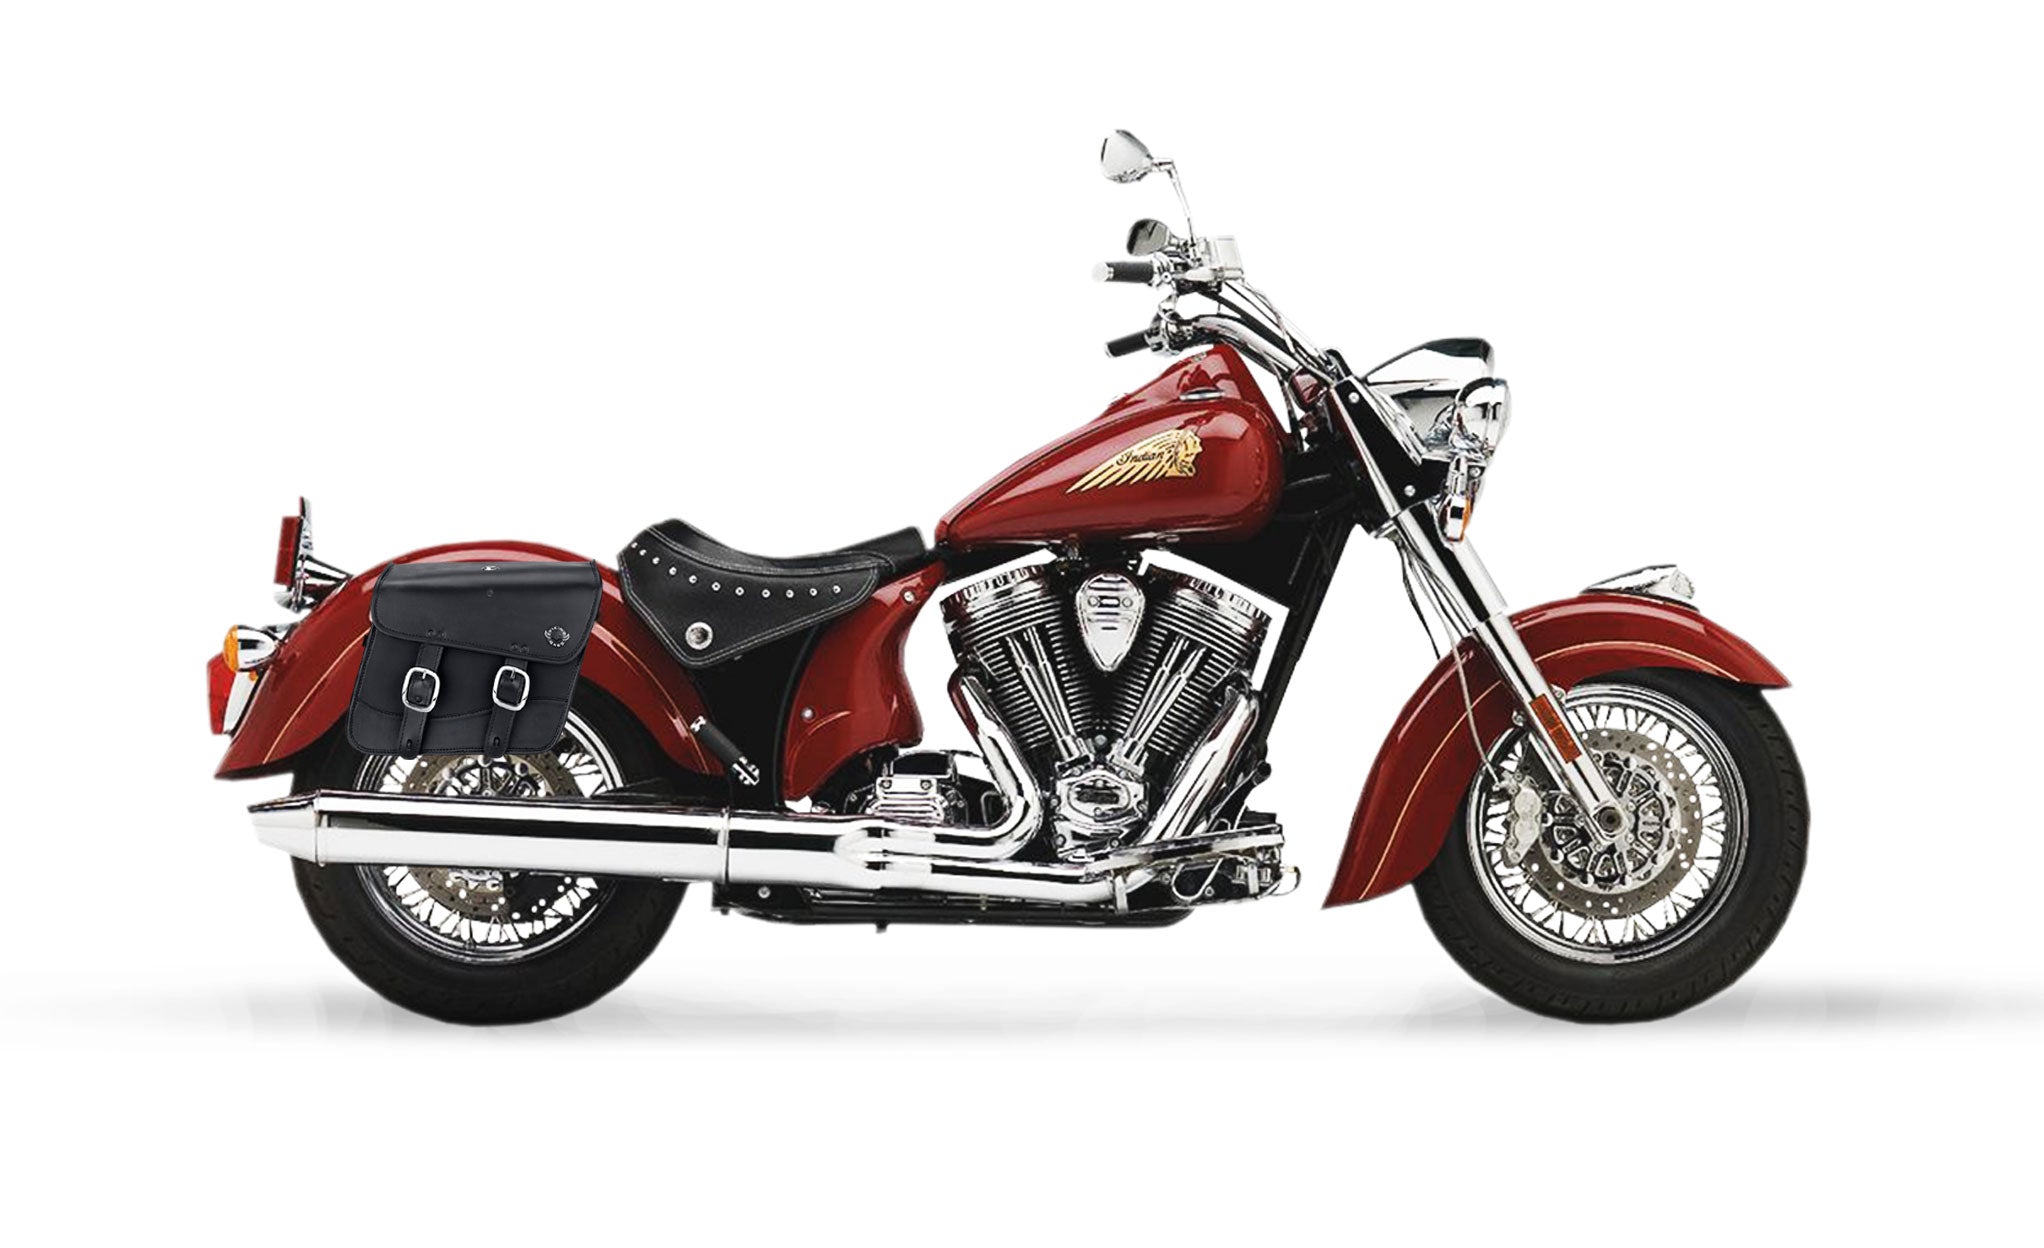 Viking Thor Medium Indian Chief Standard Leather Motorcycle Saddlebags on Bike Photo @expand